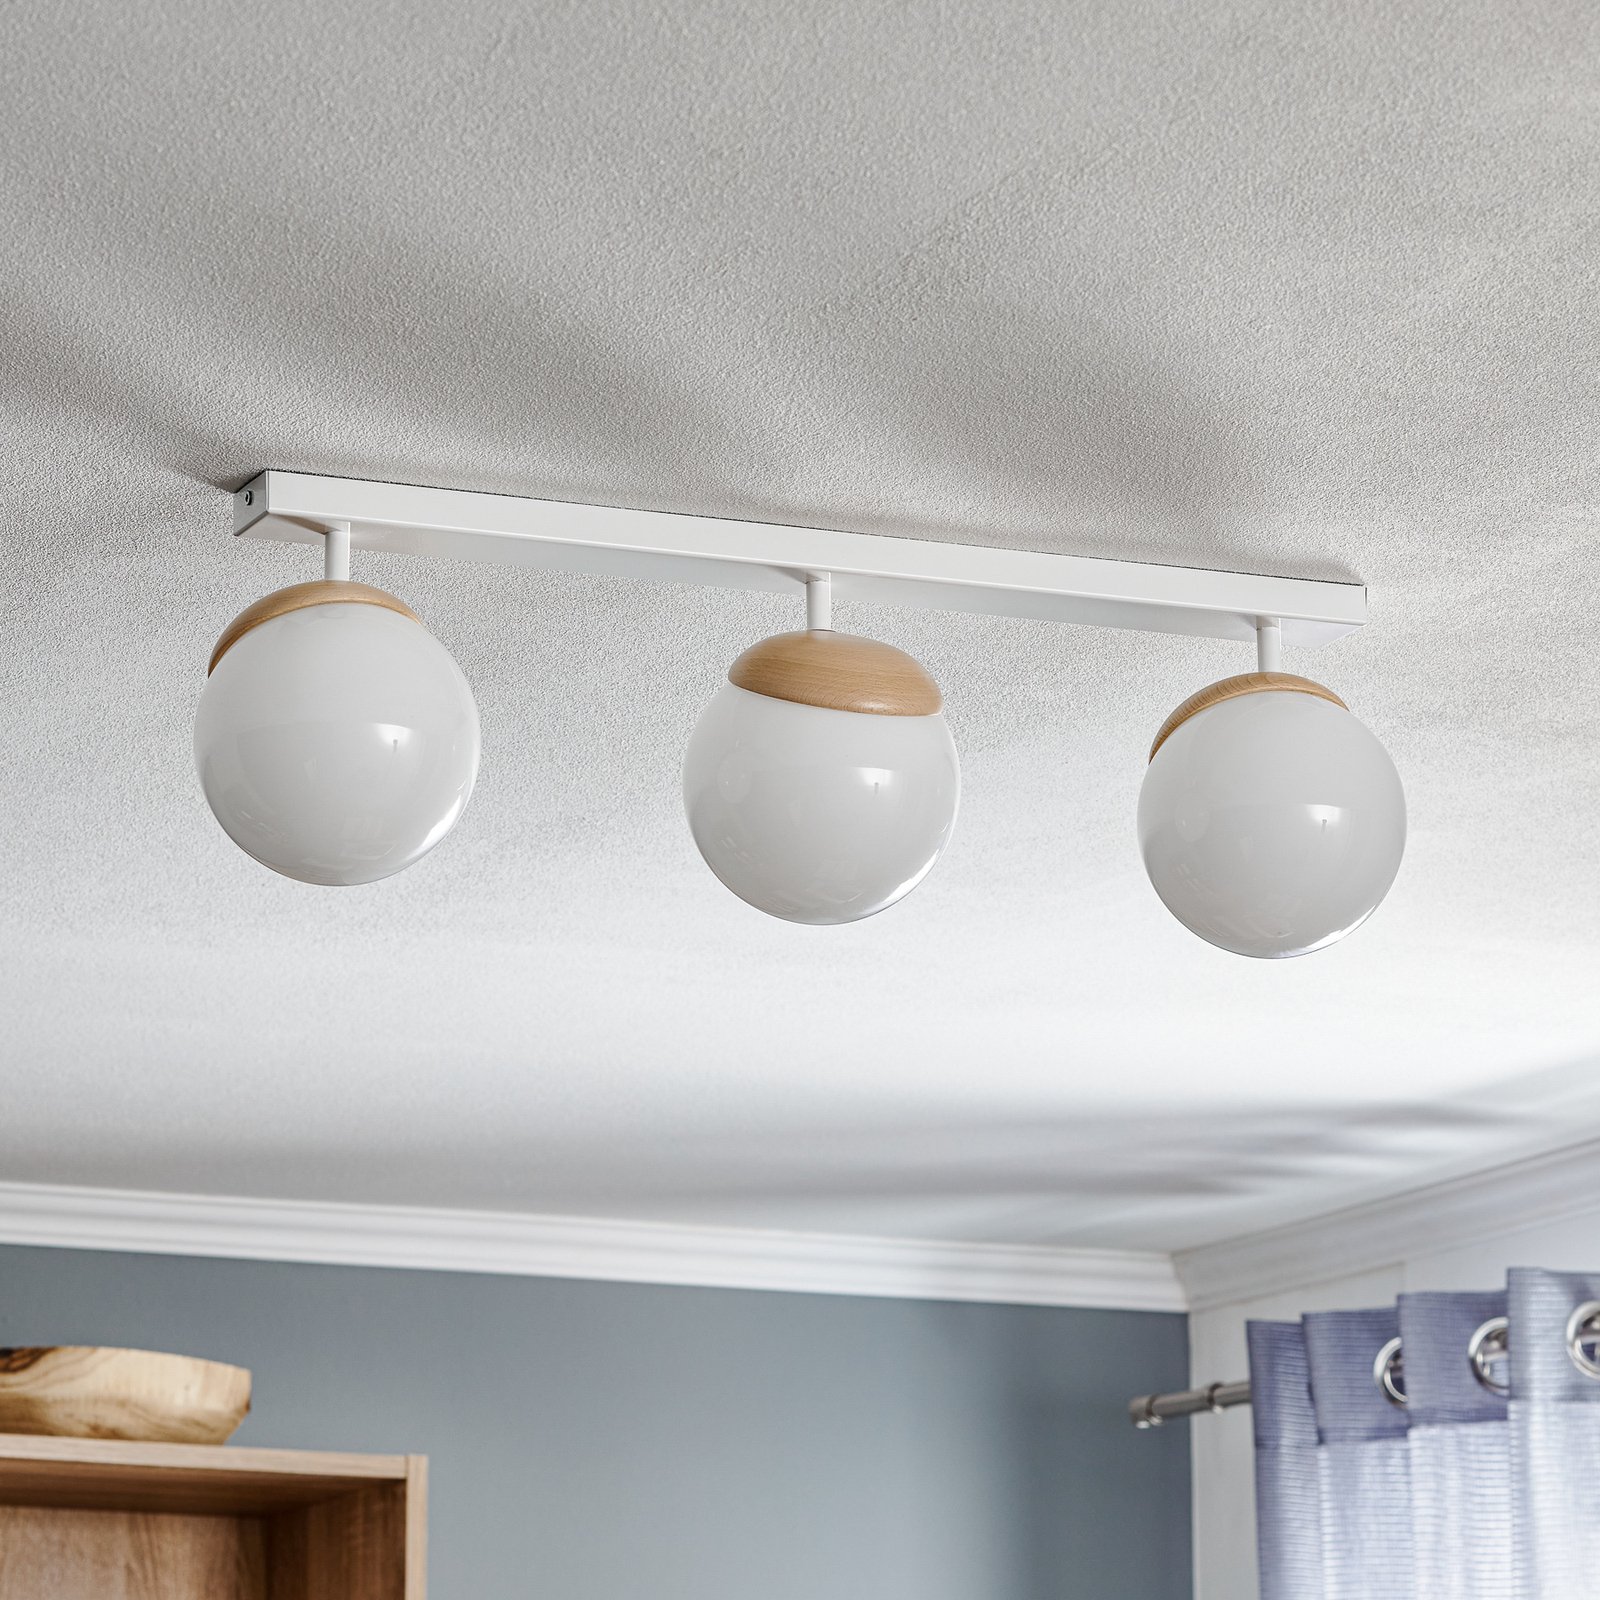 Sfera ceiling lamp 3-bulb direct long glass/wood